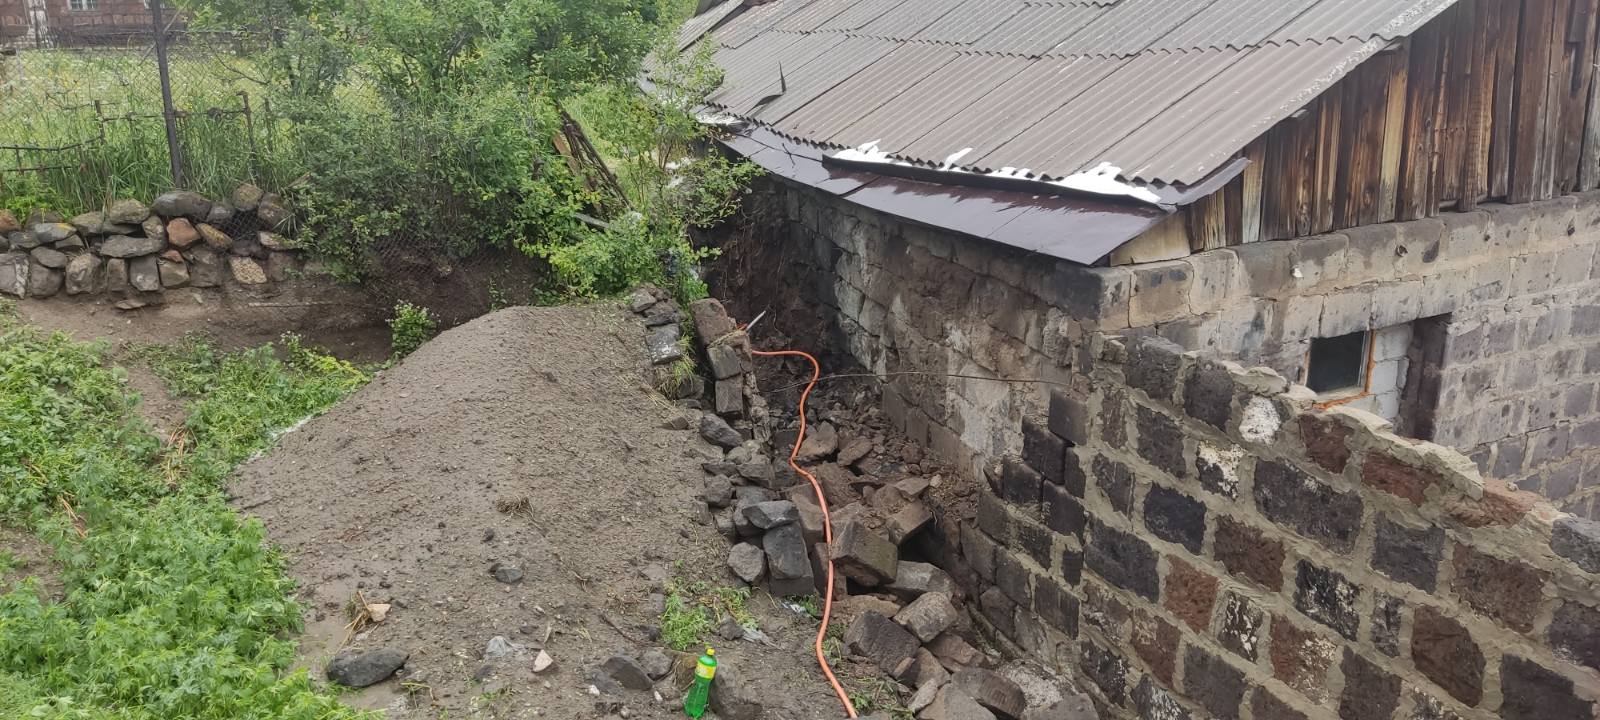 Փլուզվել է տներից մեկի պատը, վնասվել է խմելու ջրի խողովակը. վնասներ Շիրակի մարզում անձրեւի հետեւանքով